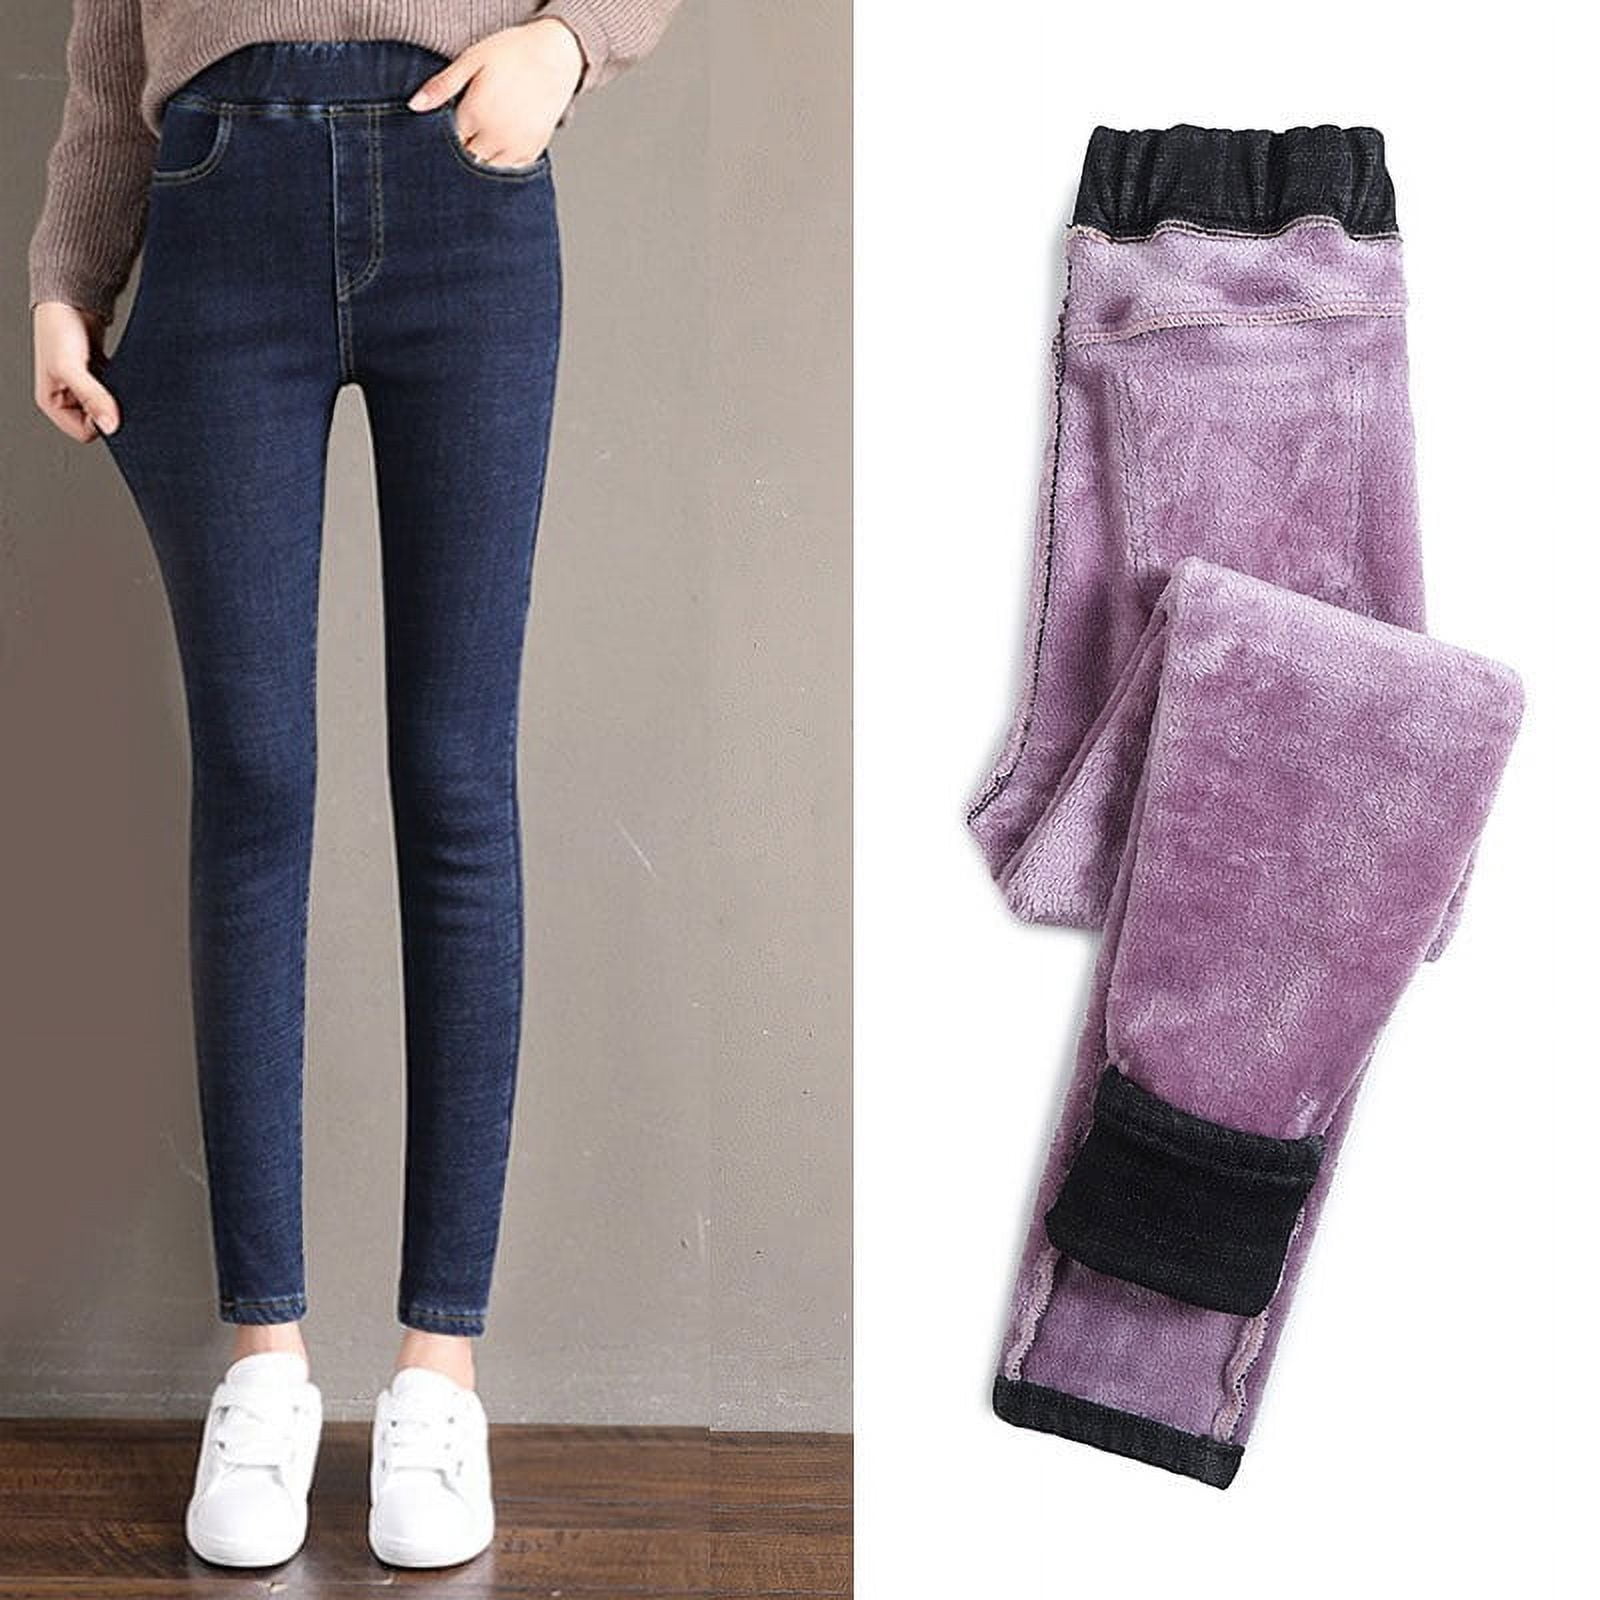 Double Fleece Thermal Jeggings Warm Pants Jean Winter Warm Pants